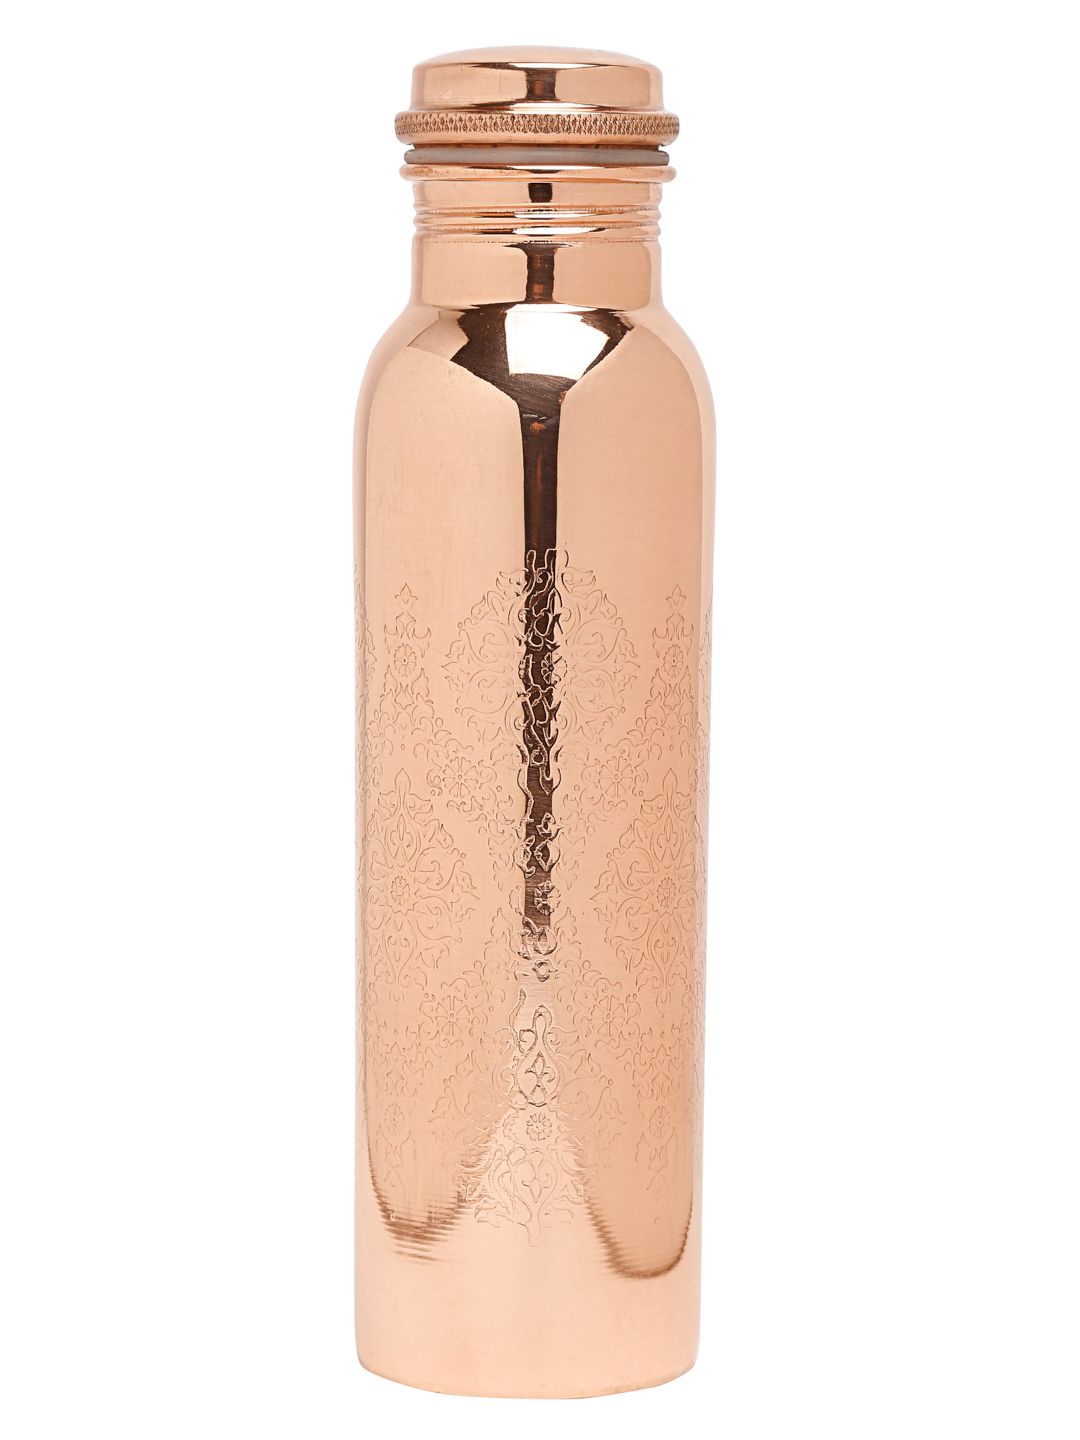 EK BY EKTA KAPOOR Copper-Toned Solid Water Bottle 950 ML Price in India